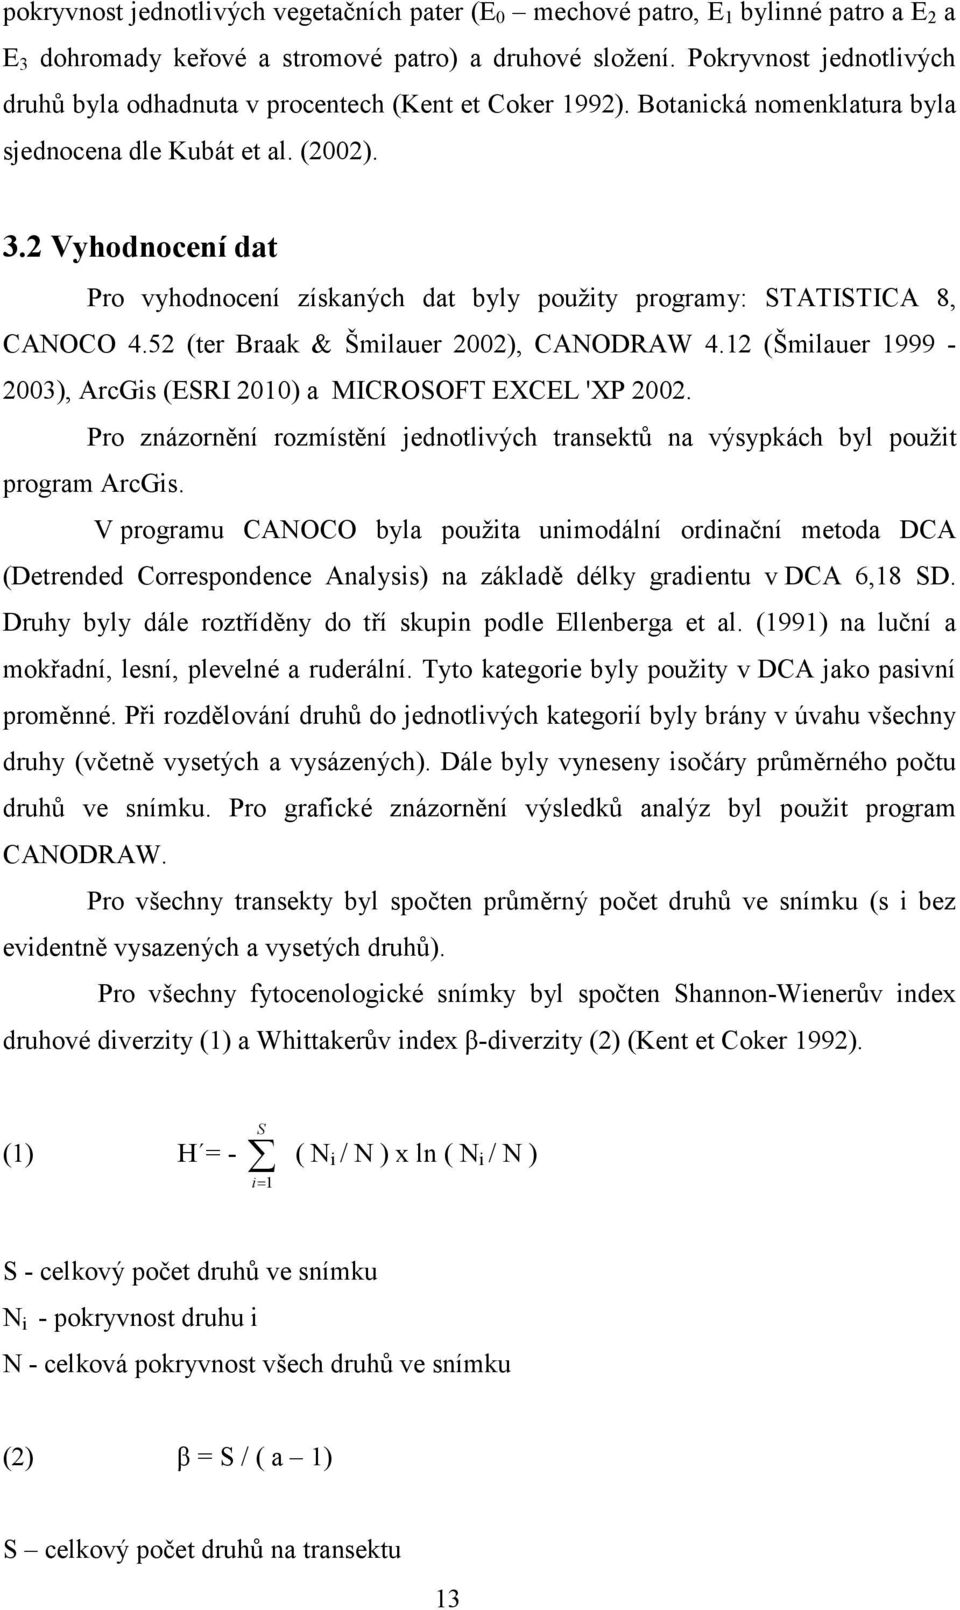 2 Vyhodnocení dat Pro vyhodnocení získaných dat byly použity programy: STATISTICA 8, CANOCO 4.52 (ter Braak & Šmilauer 2002), CANODRAW 4.